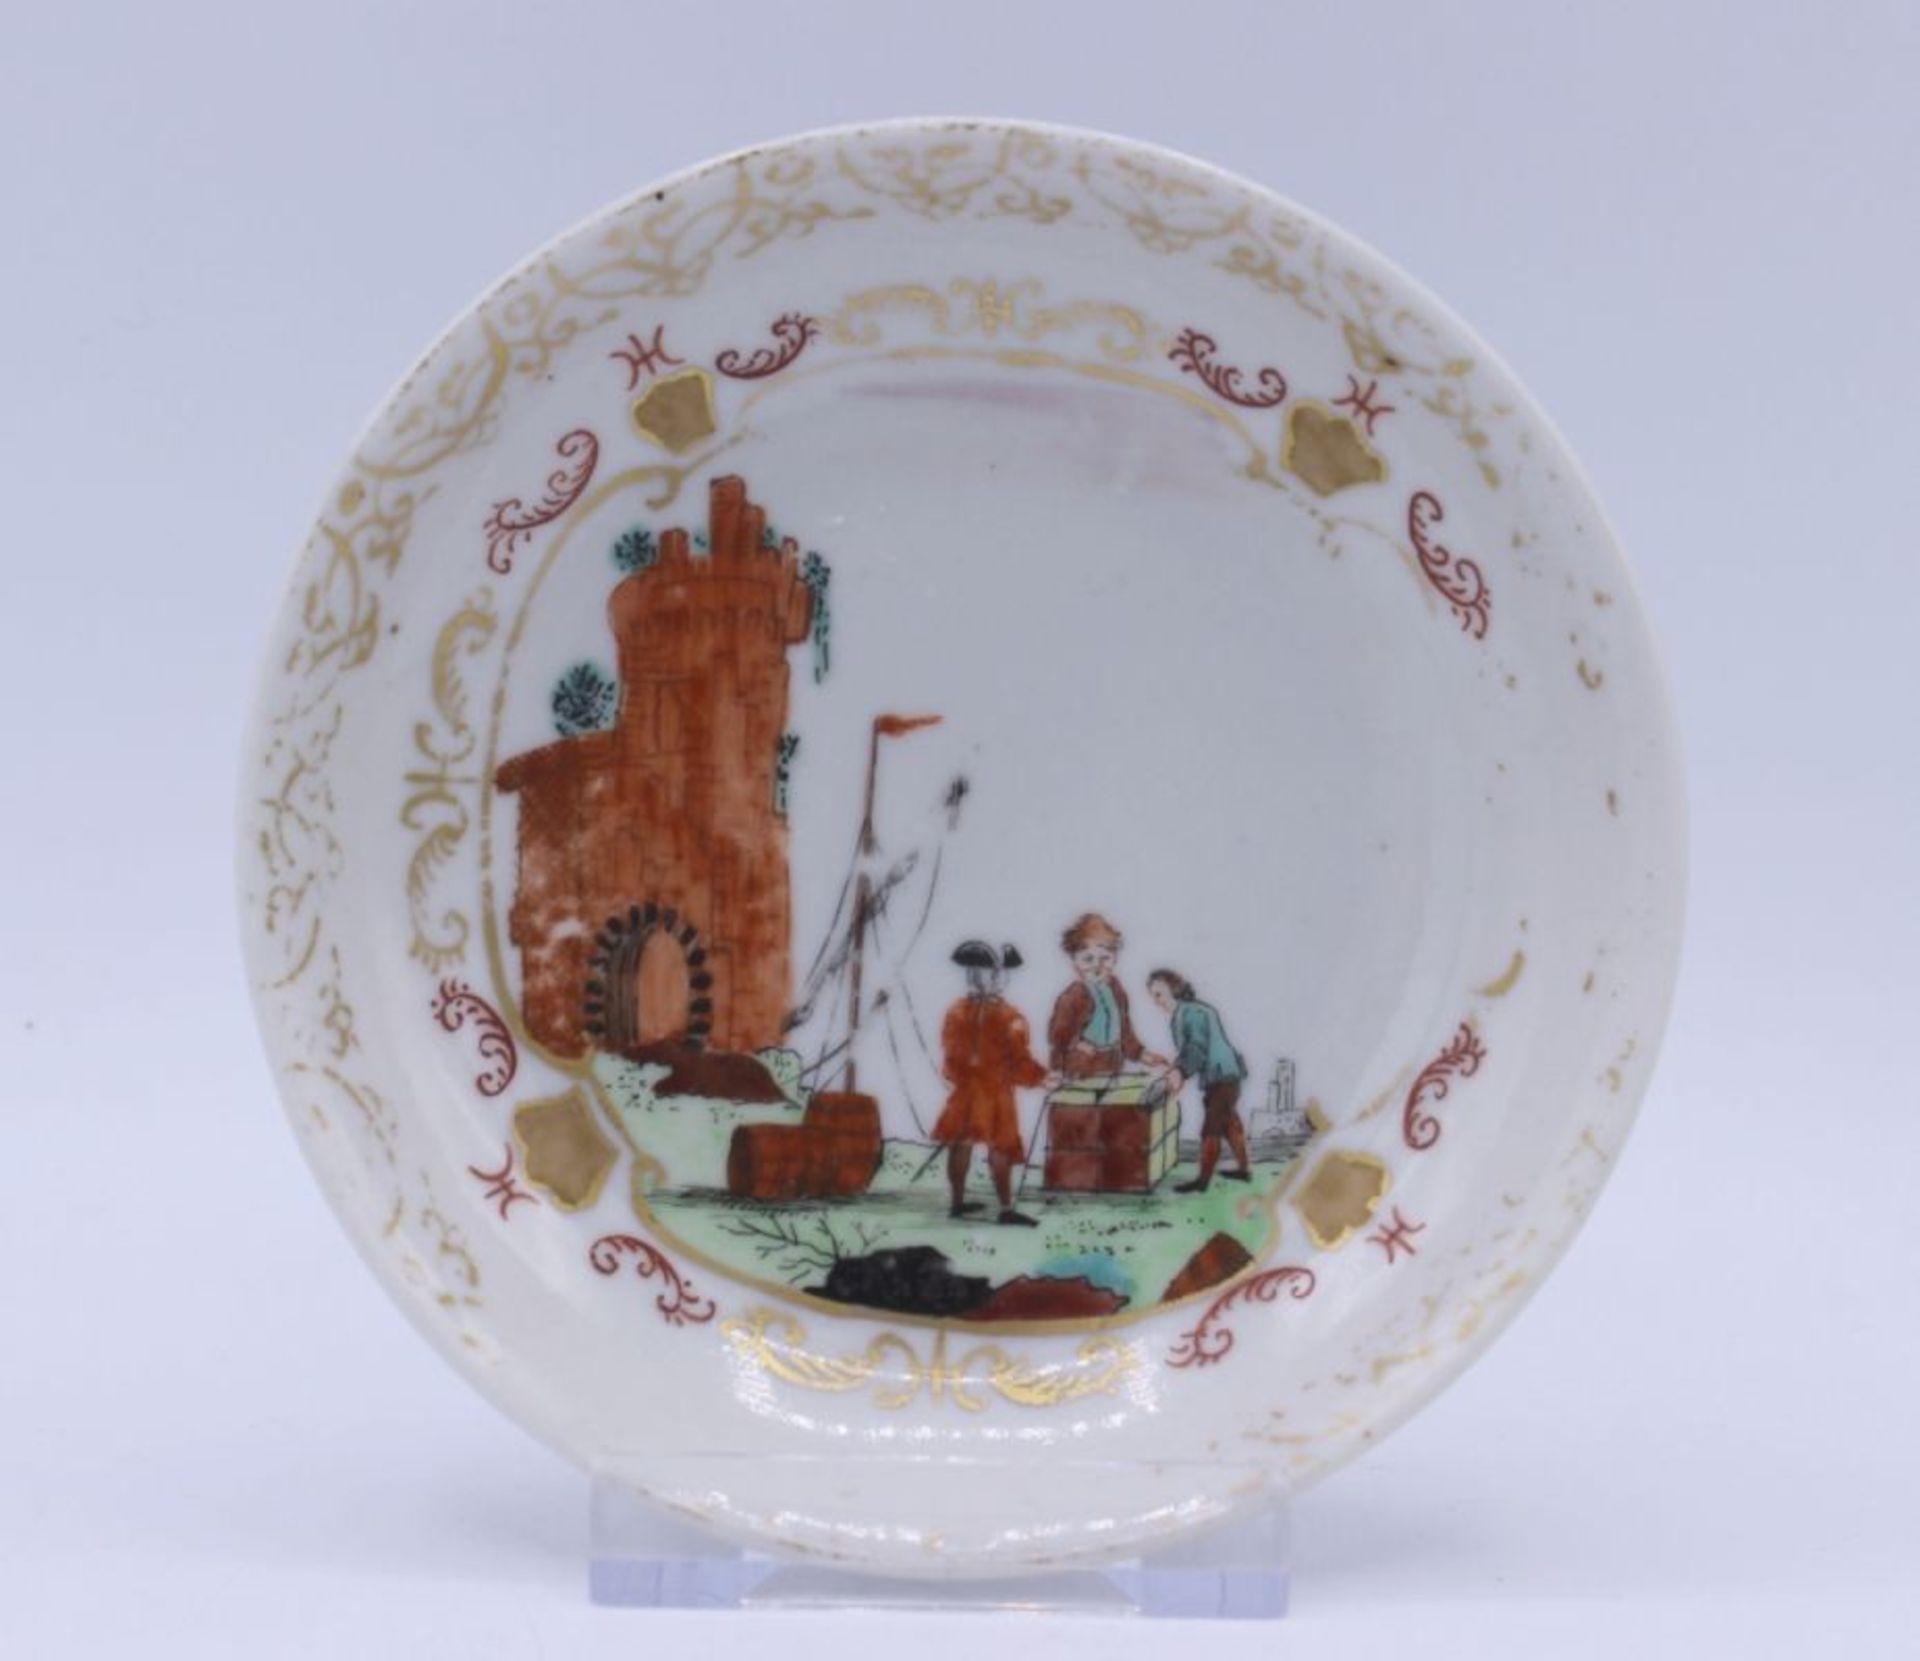 Kleiner Teller - wohl China 18./19.Jahrhundert "Compagnie des Indes", ungemarkt, Porzellan bemalt